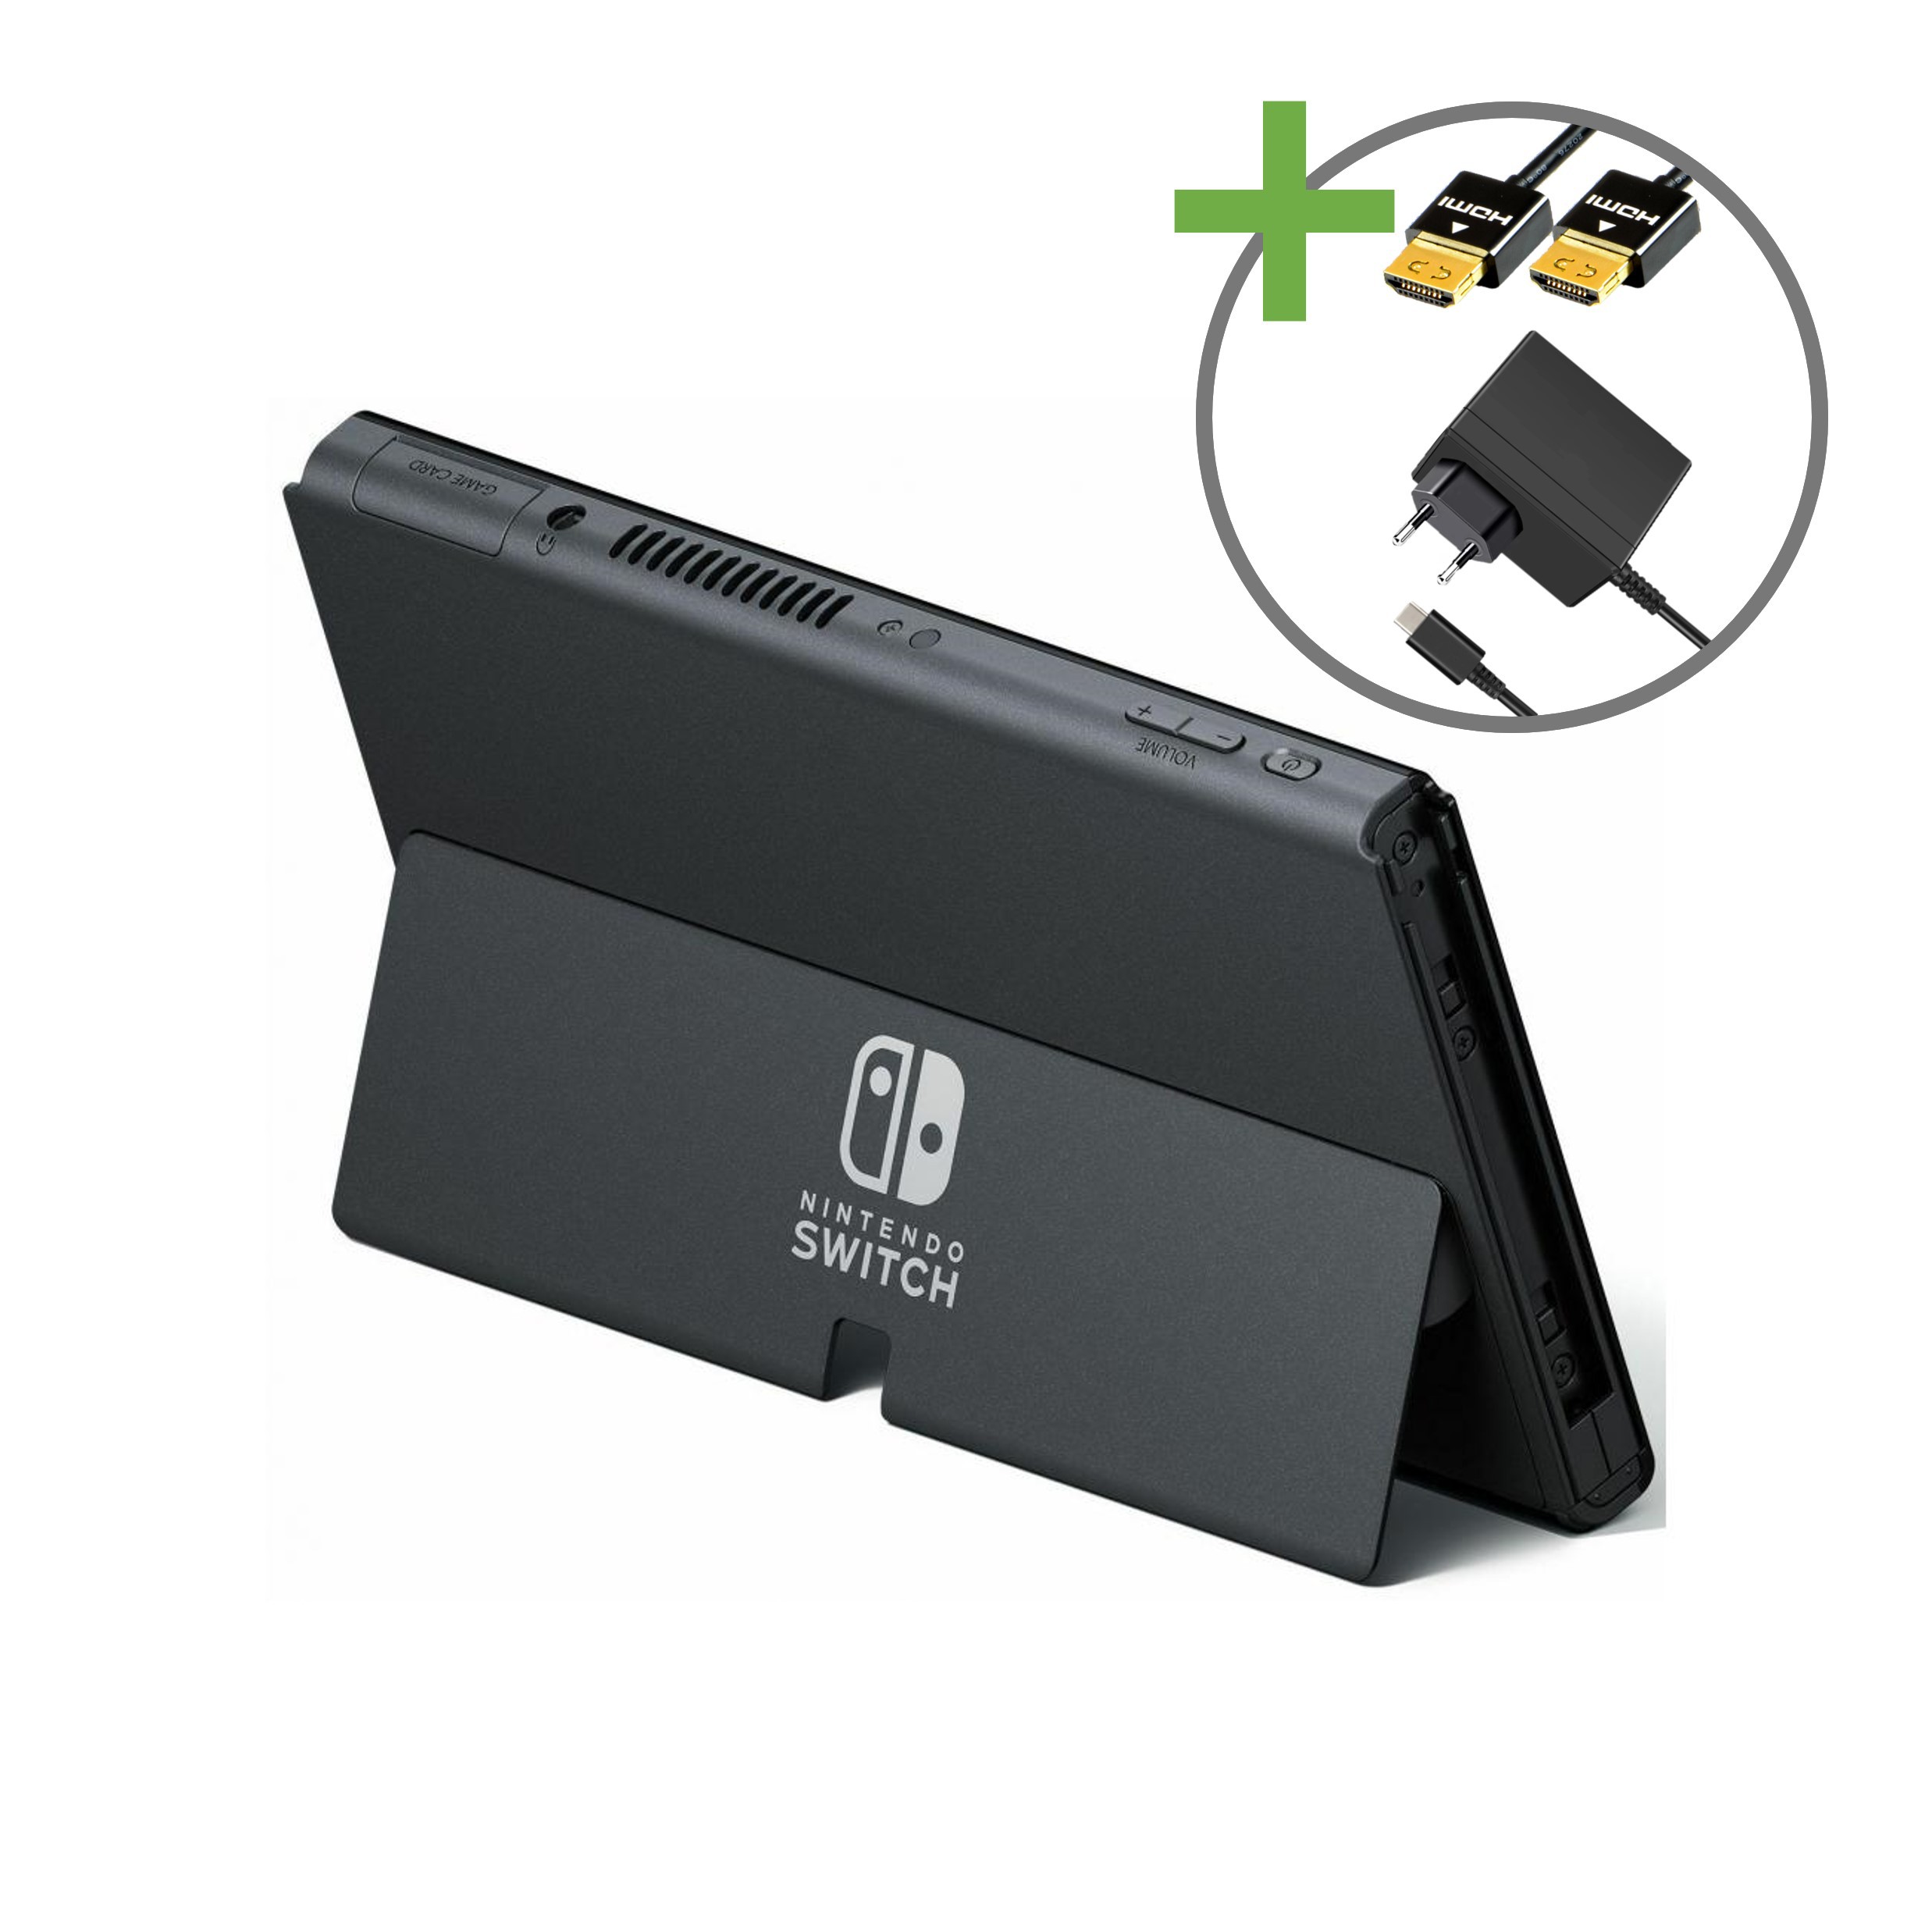 Nintendo Switch OLED Console - Wit - Nintendo Switch Hardware - 3